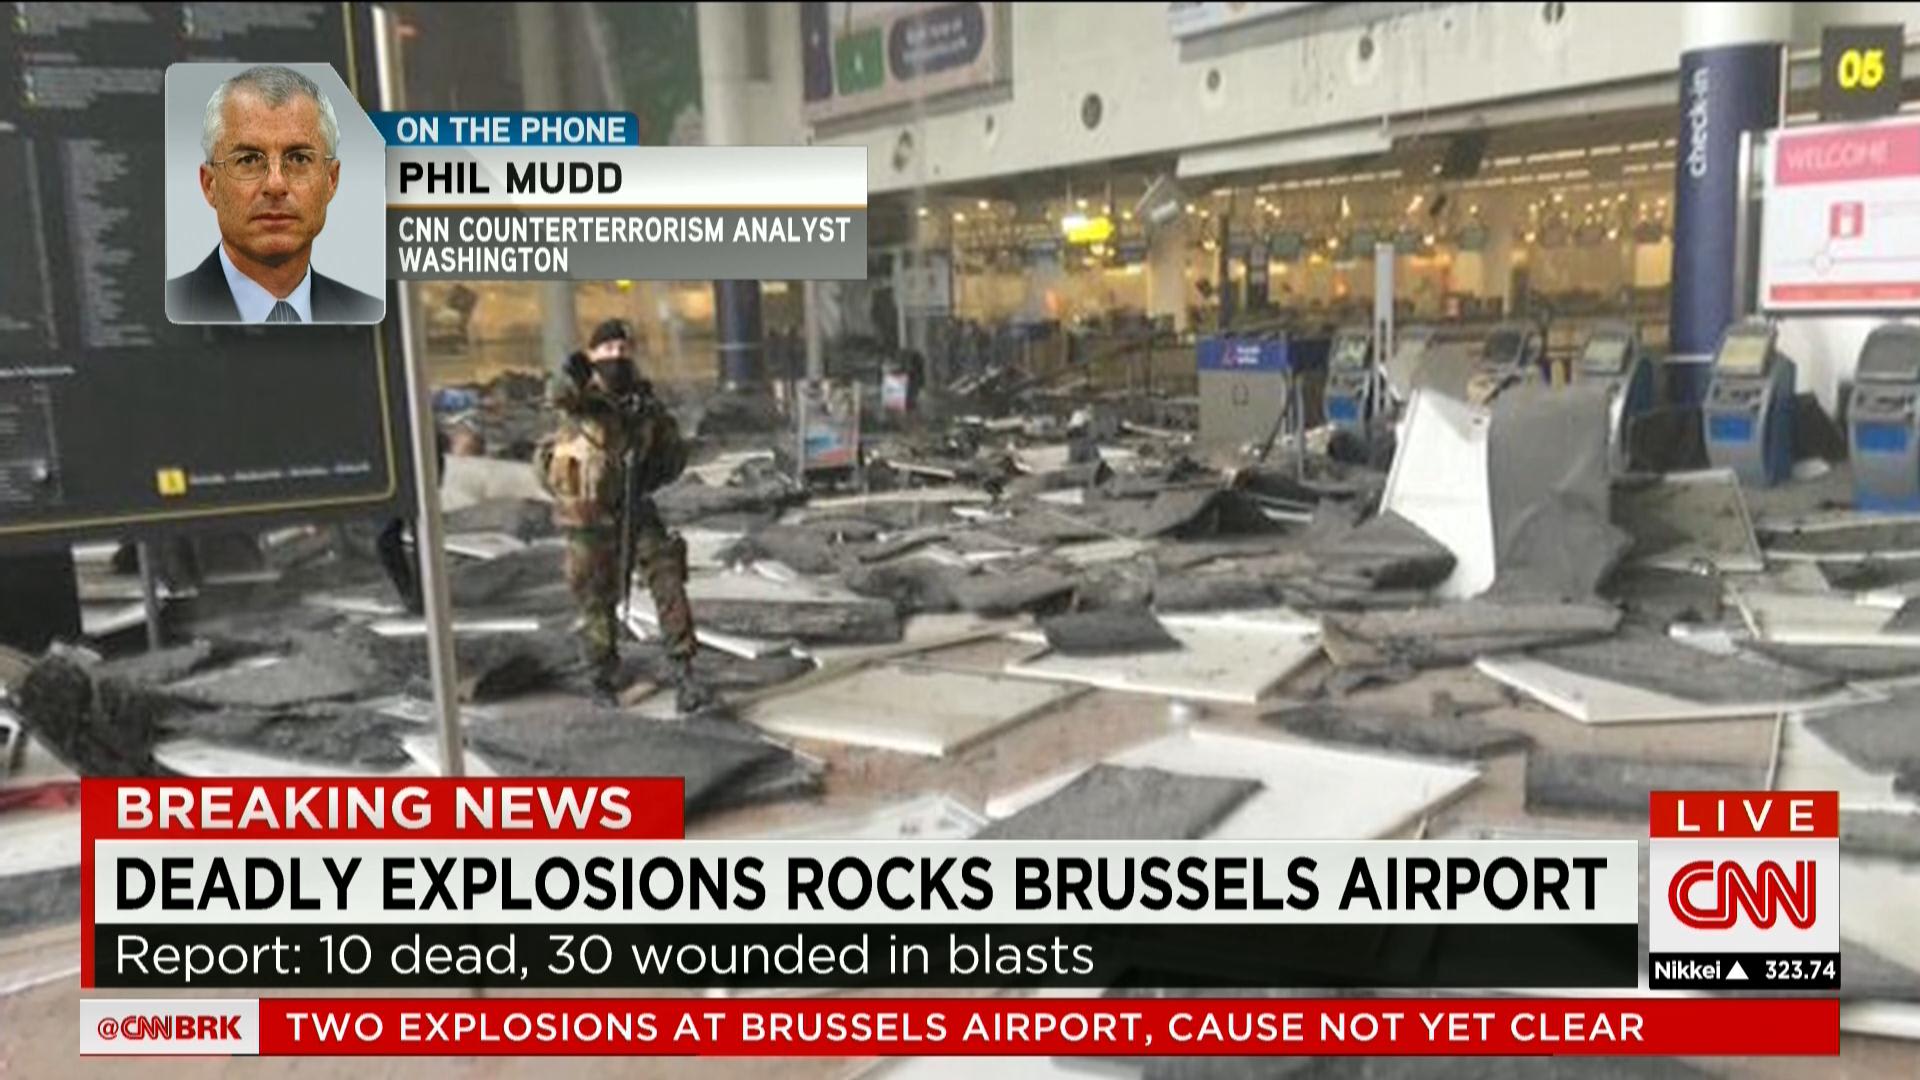 بالصور: شاهد اللحظات الأولى لتفجيرات بروكسل التي هزت بلجيكا